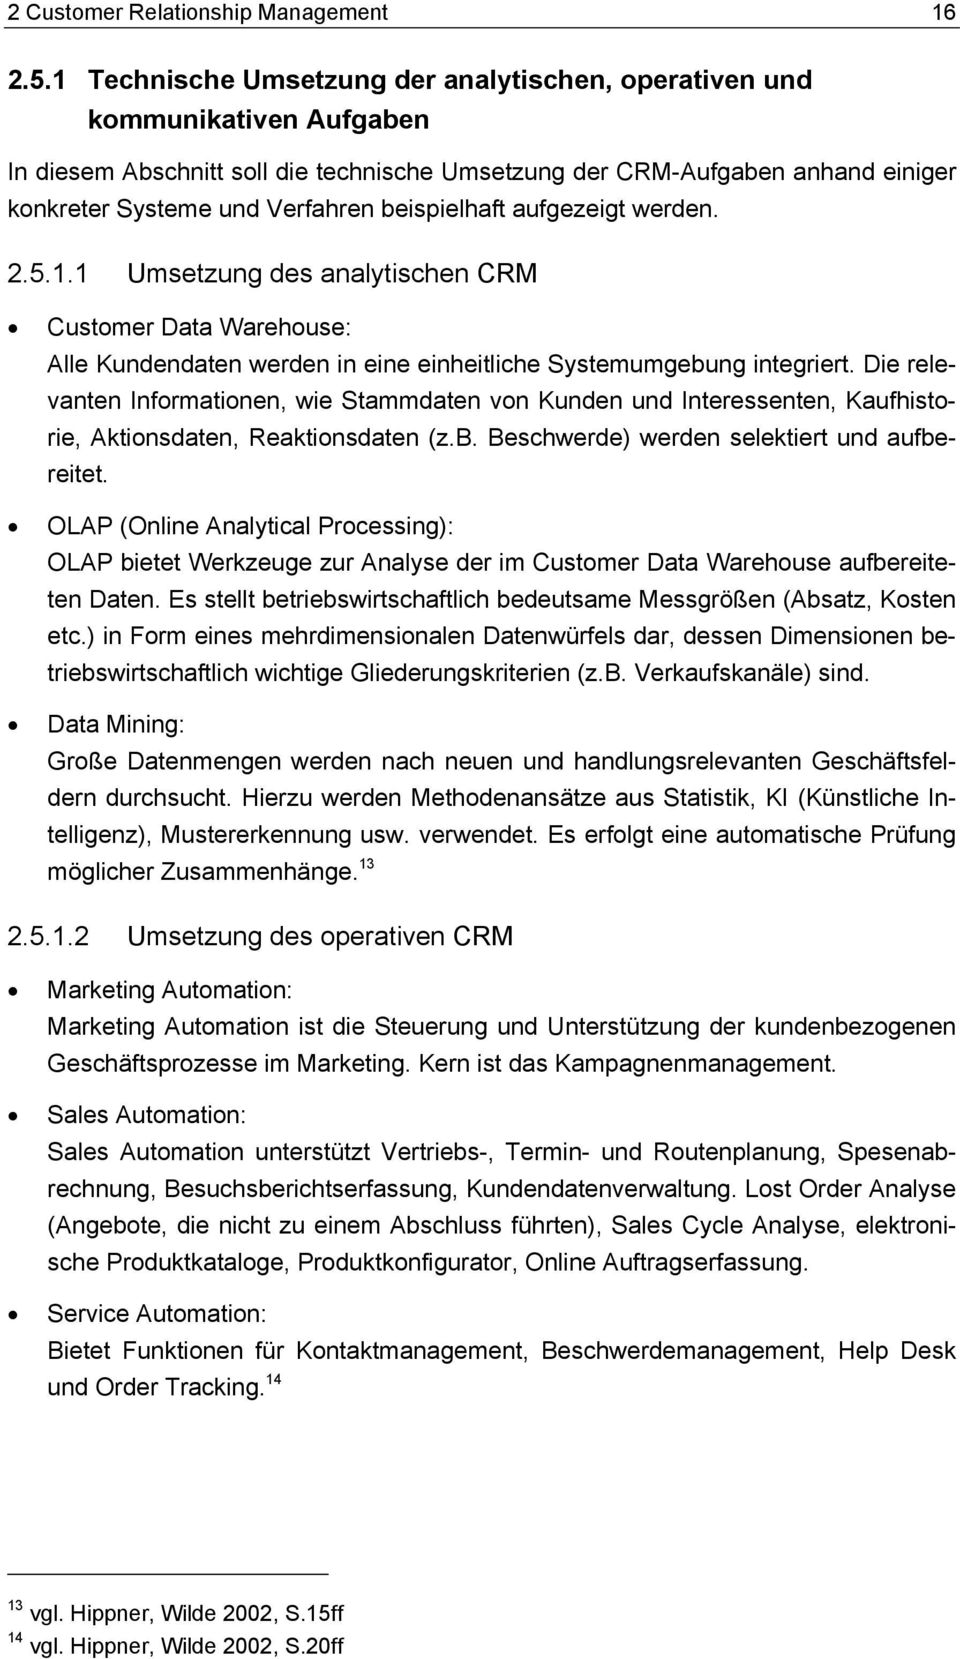 beispielhaft aufgezeigt werden. 2.5.1.1 Umsetzung des analytischen CRM Customer Data Warehouse: Alle Kundendaten werden in eine einheitliche Systemumgebung integriert.